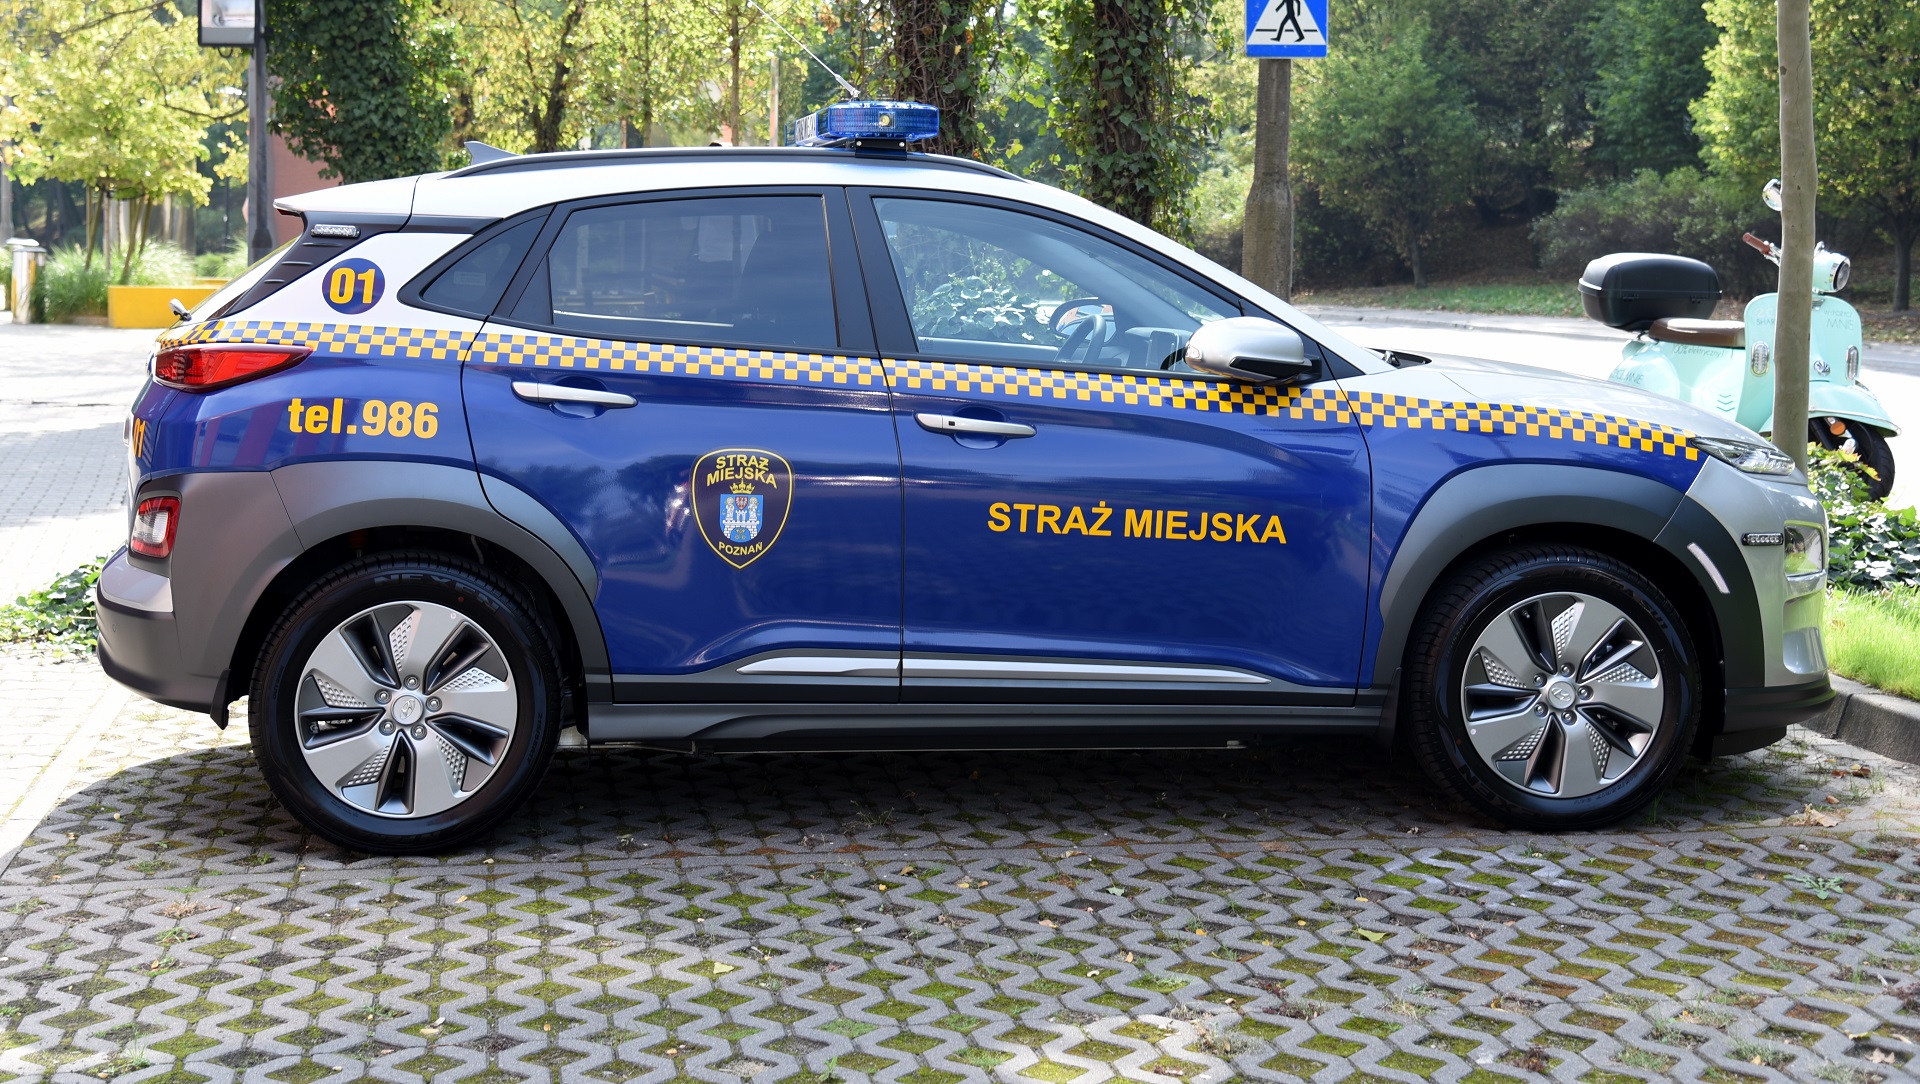 Straż Miejska w Poznaniu otrzymała nowy radiowóz, który będzie patrolować ulice Starego Miasta - grafika artykułu